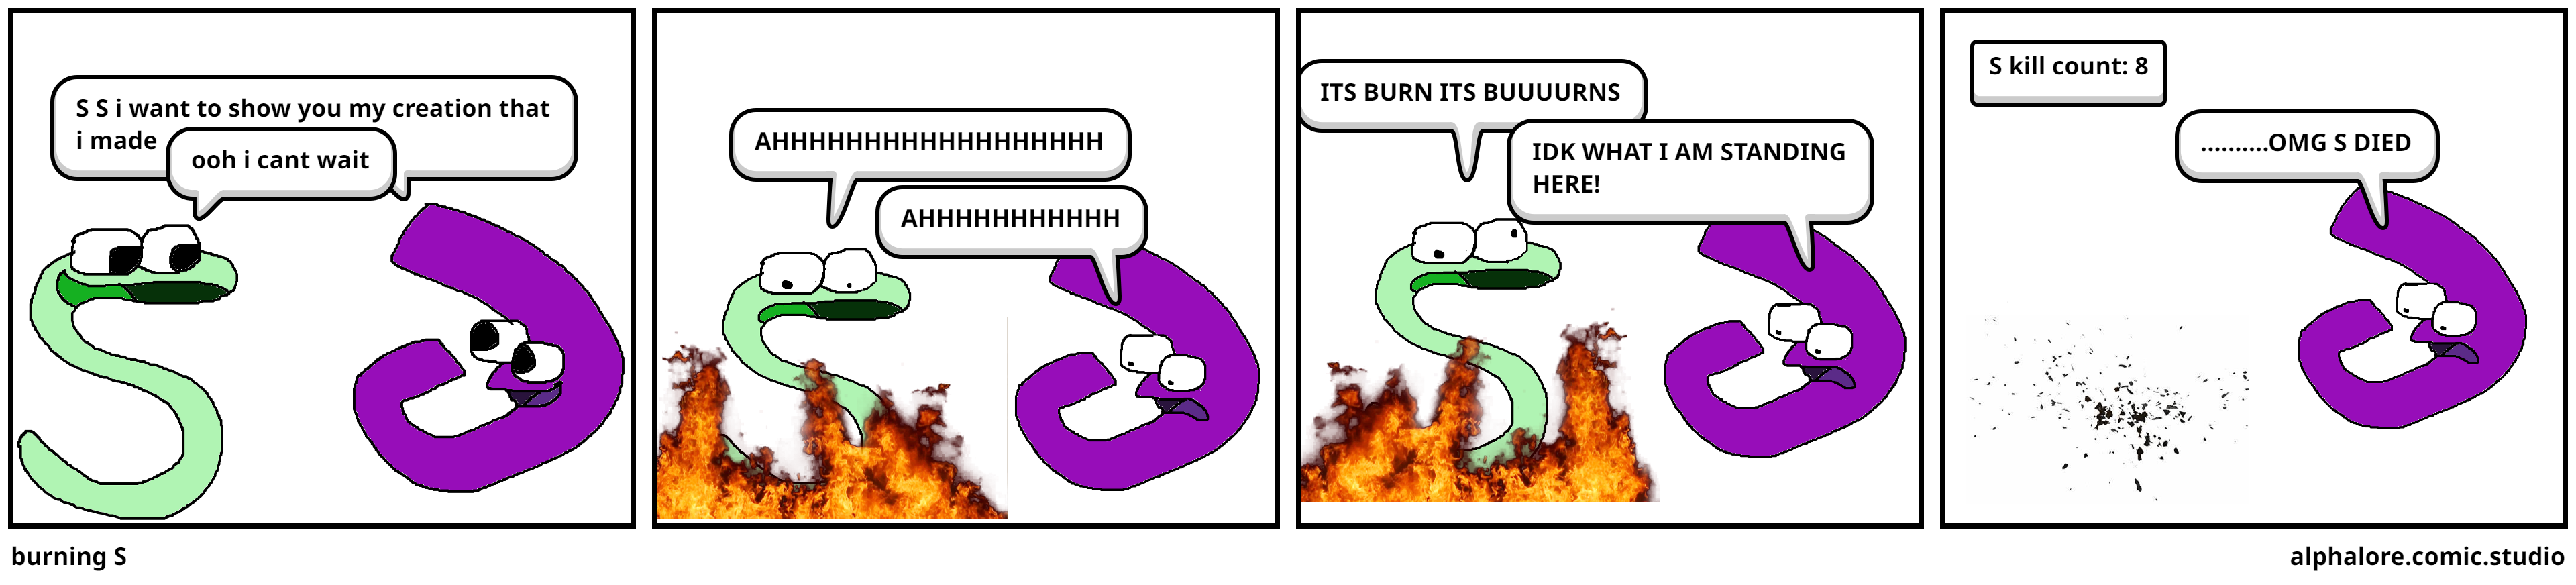 burning S